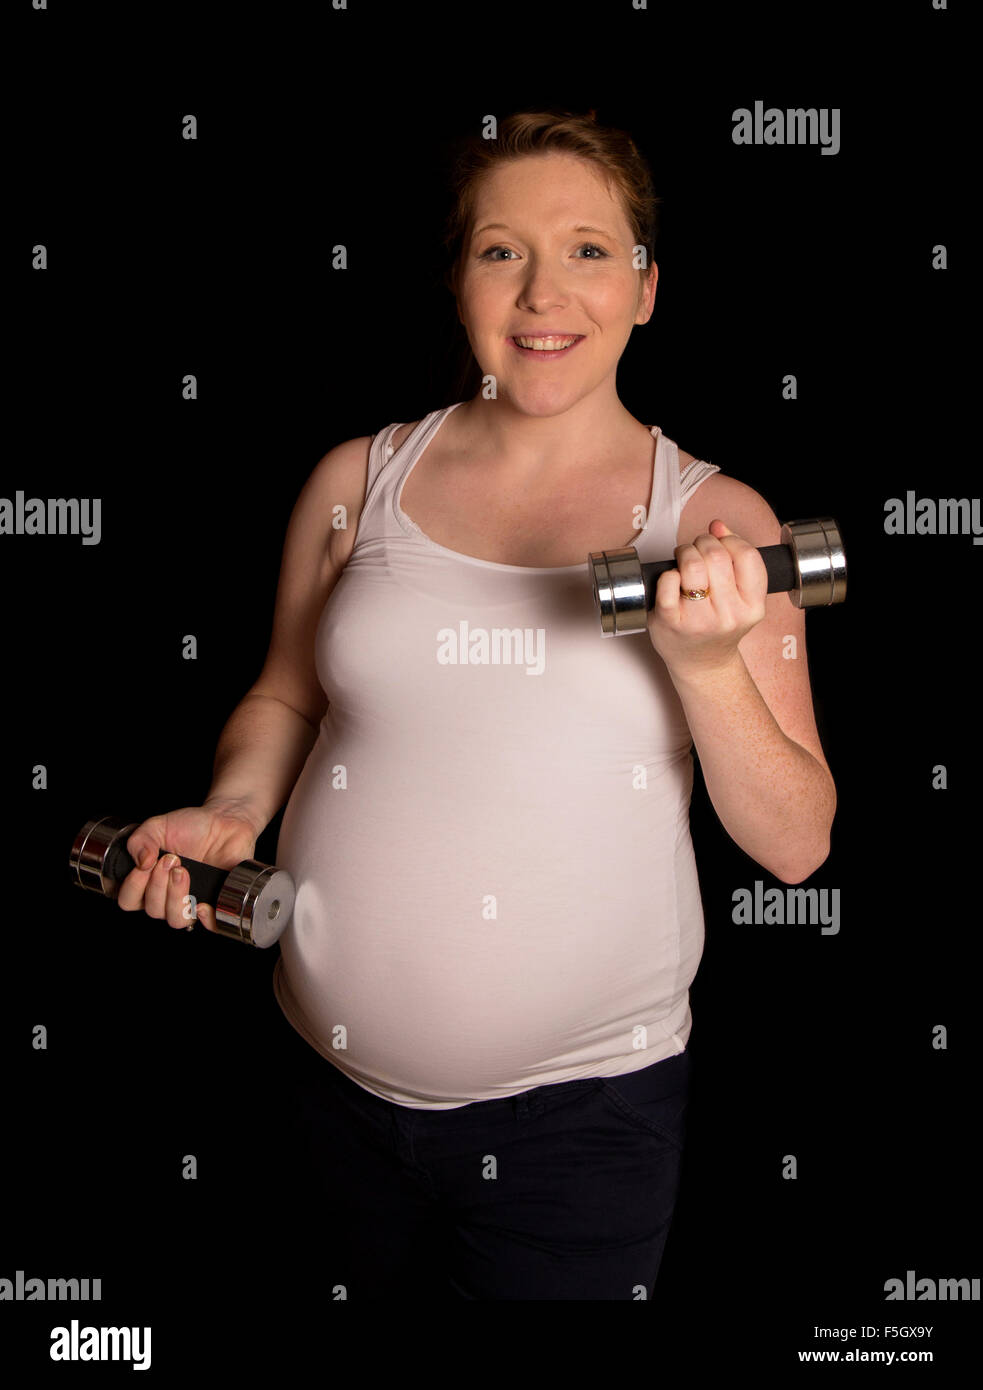 Fit und aktiv zu halten, während der Schwangerschaft Ausschnitt Stockfoto